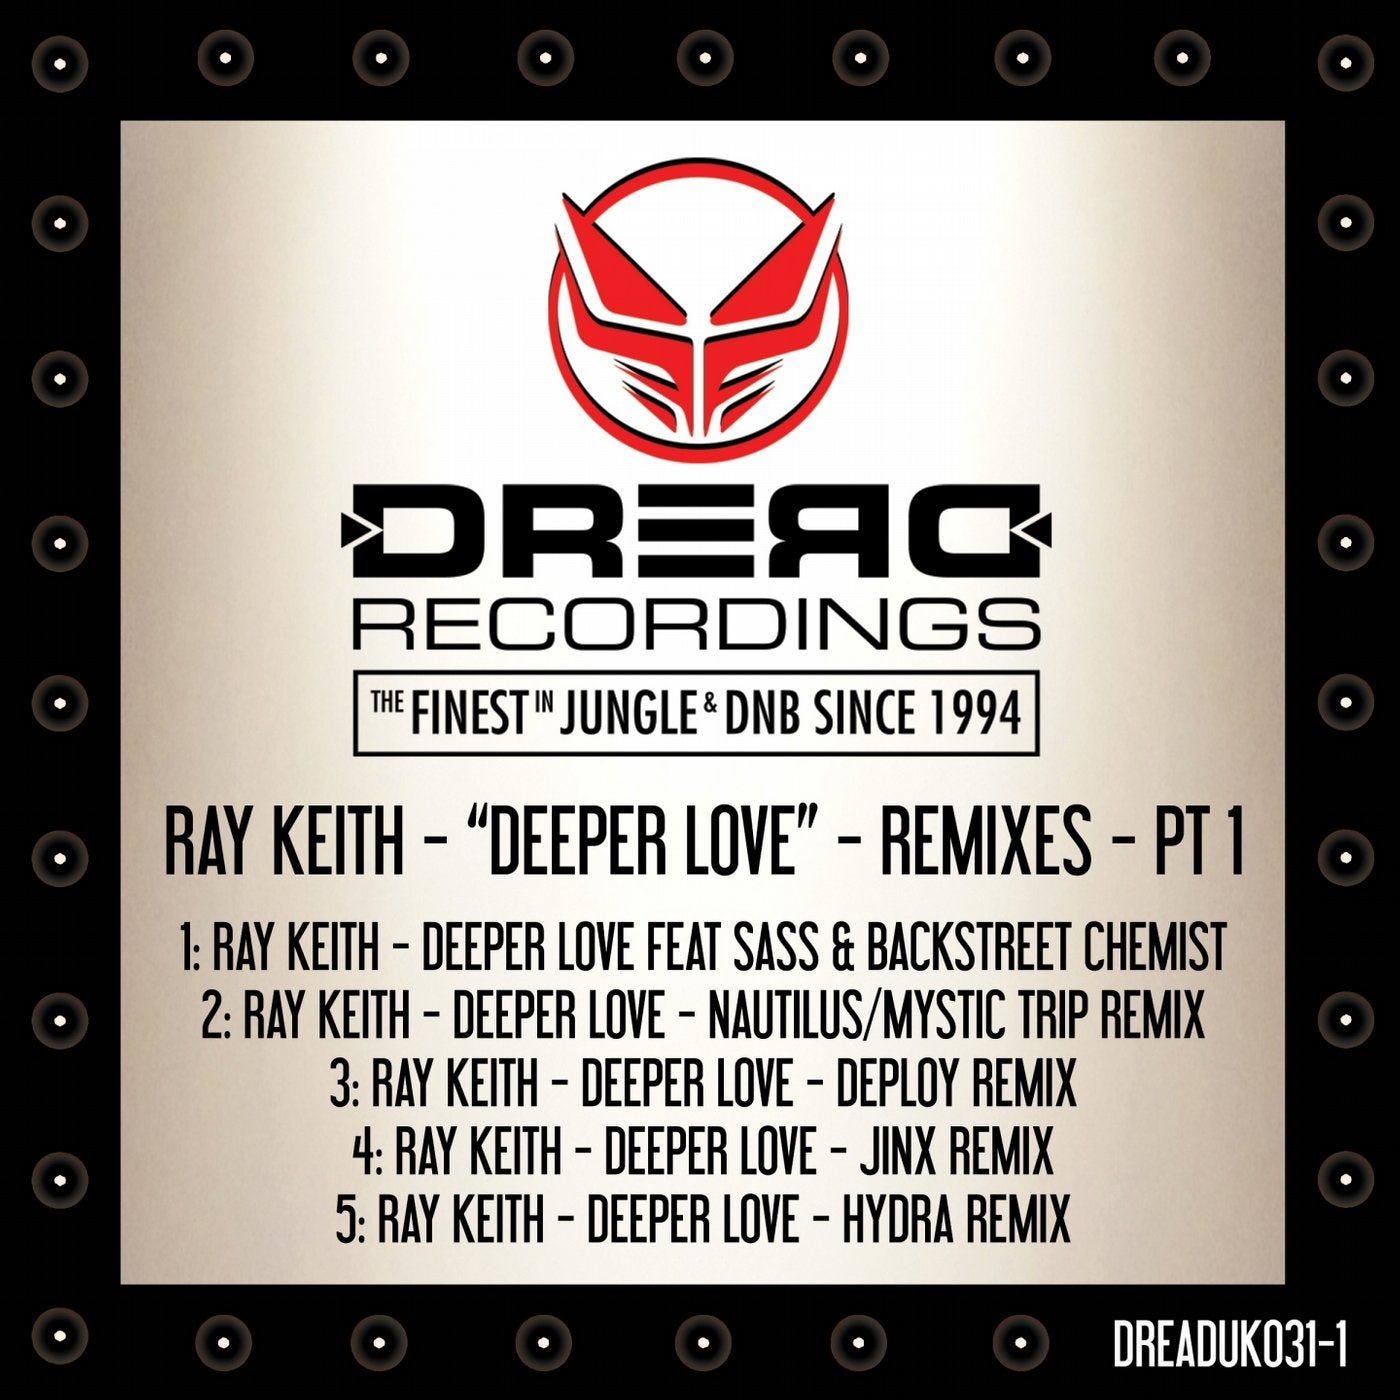 Deeper Love Remixes, Pt. 1